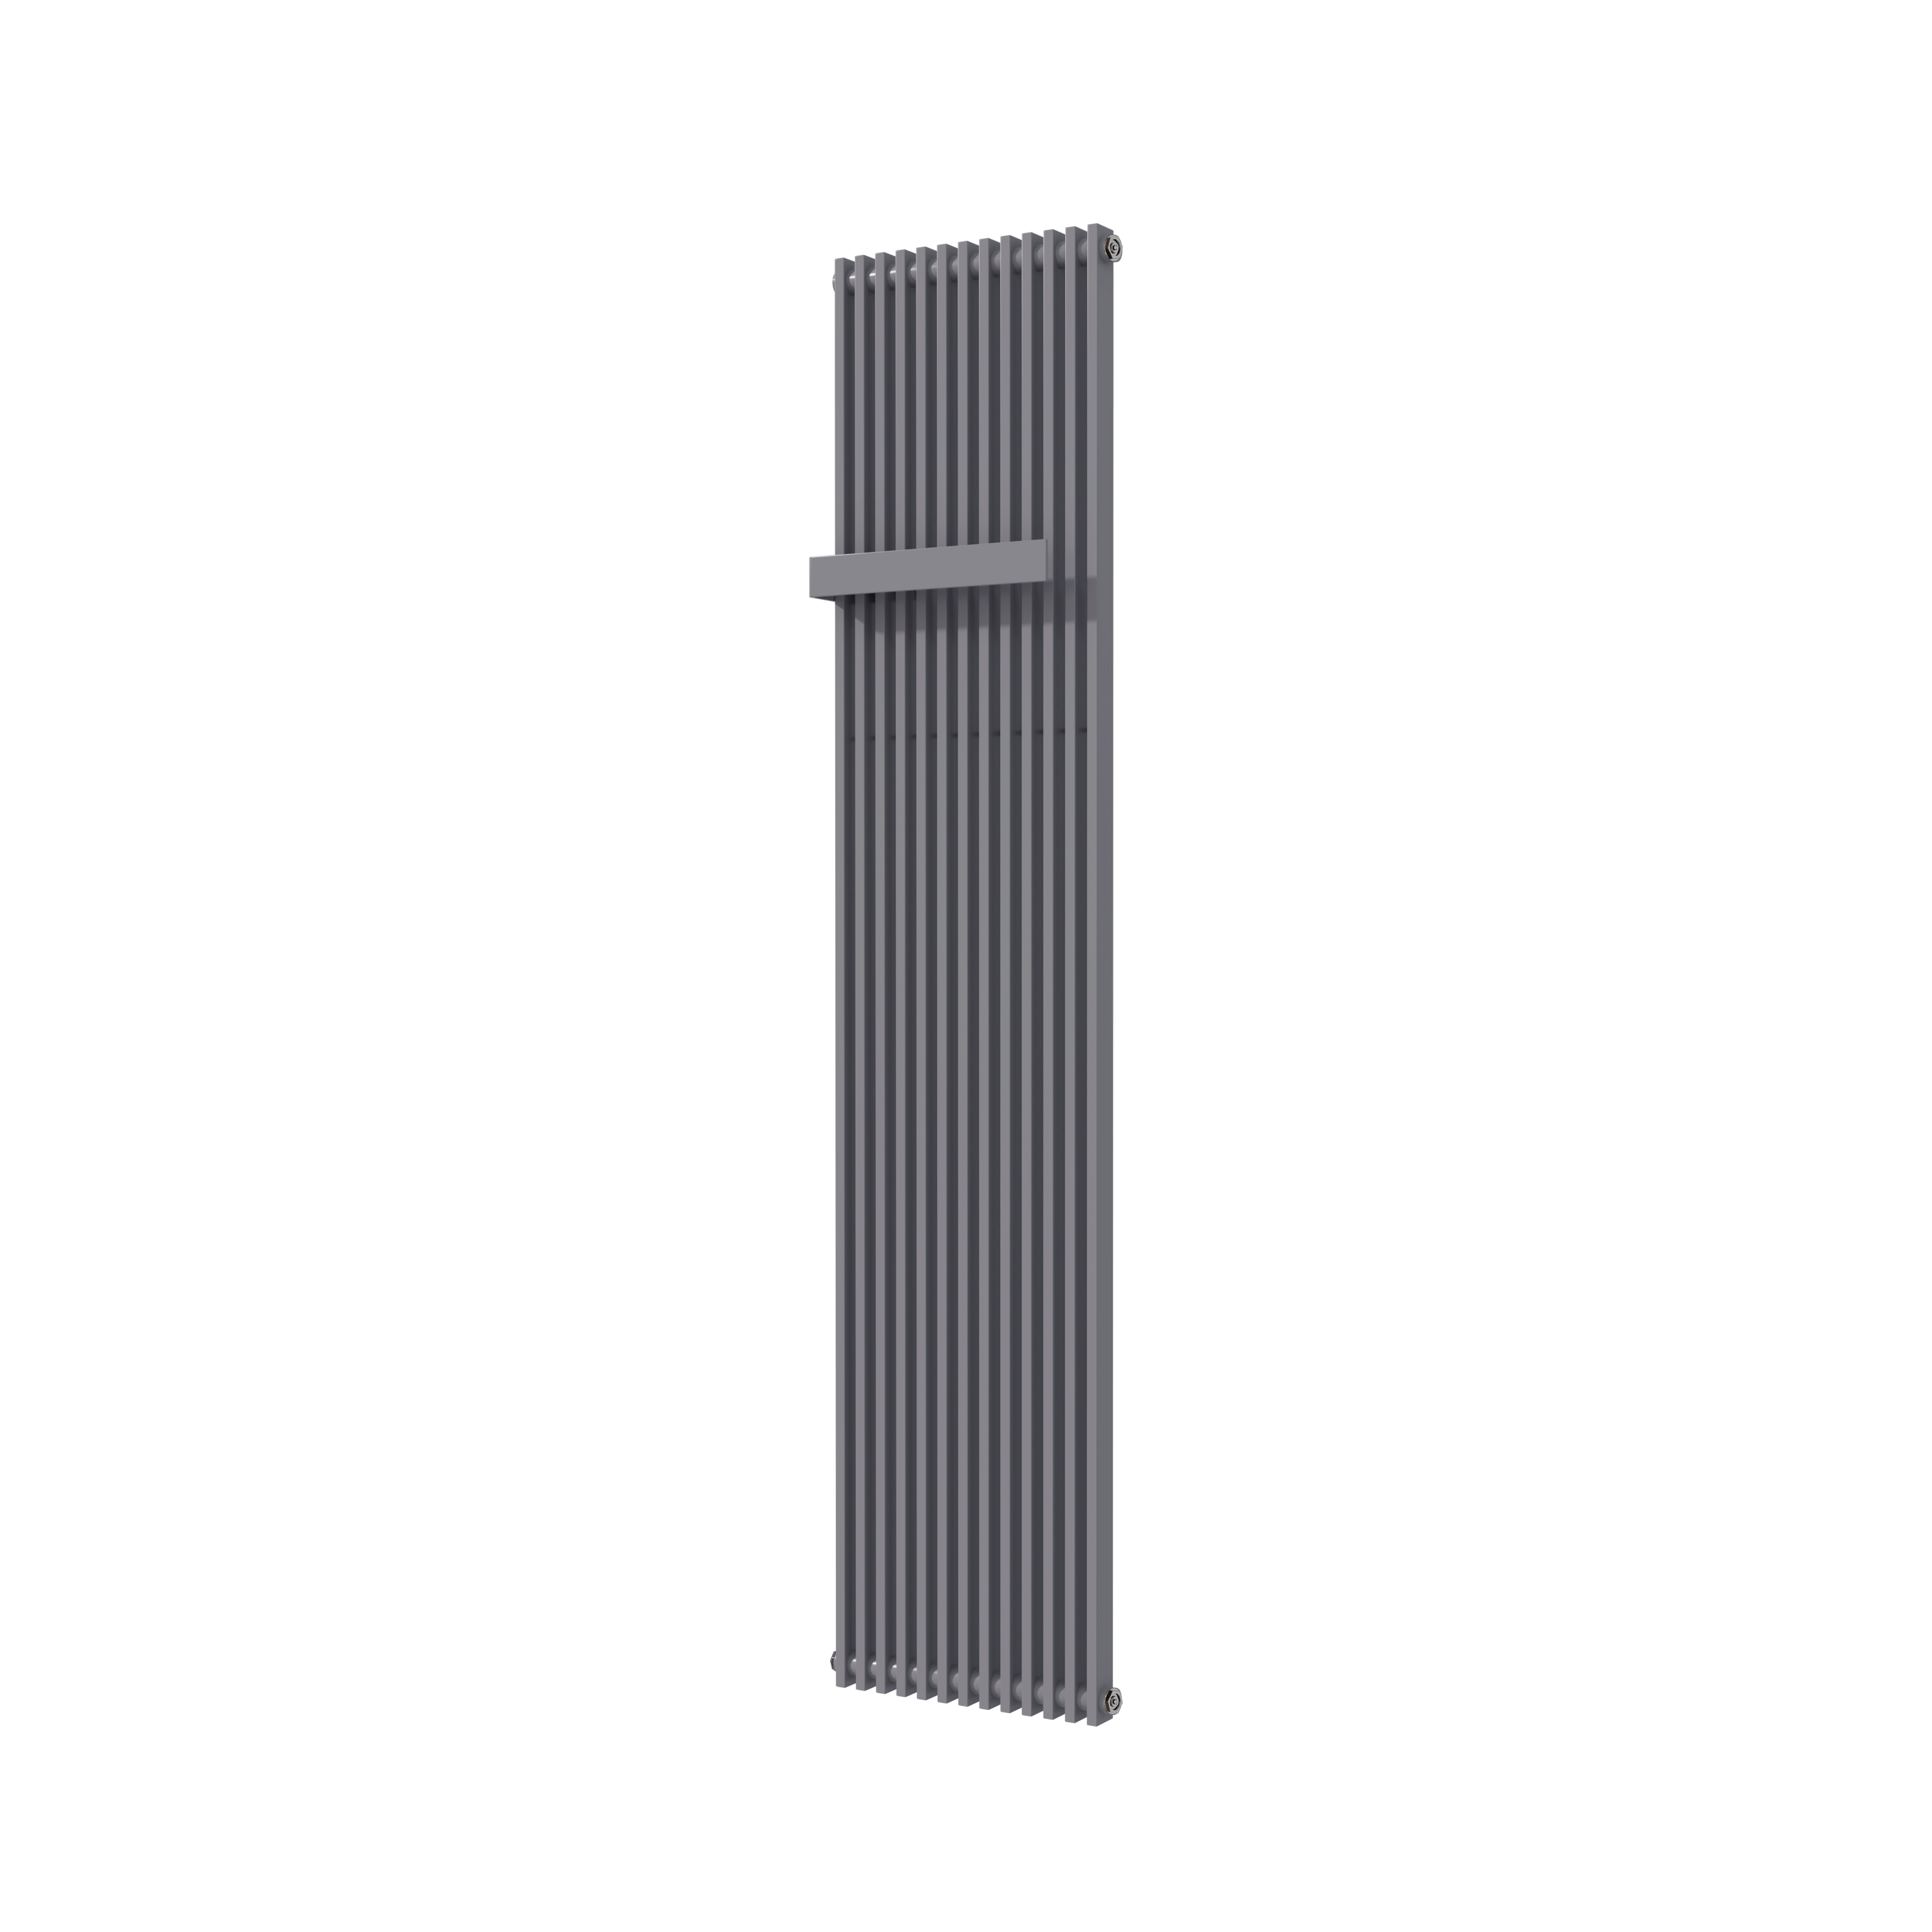 Vipera Corrason enkele badkamerradiator 40 x 180 cm centrale verwarming antraciet grijs zijaansluiting 1.339W